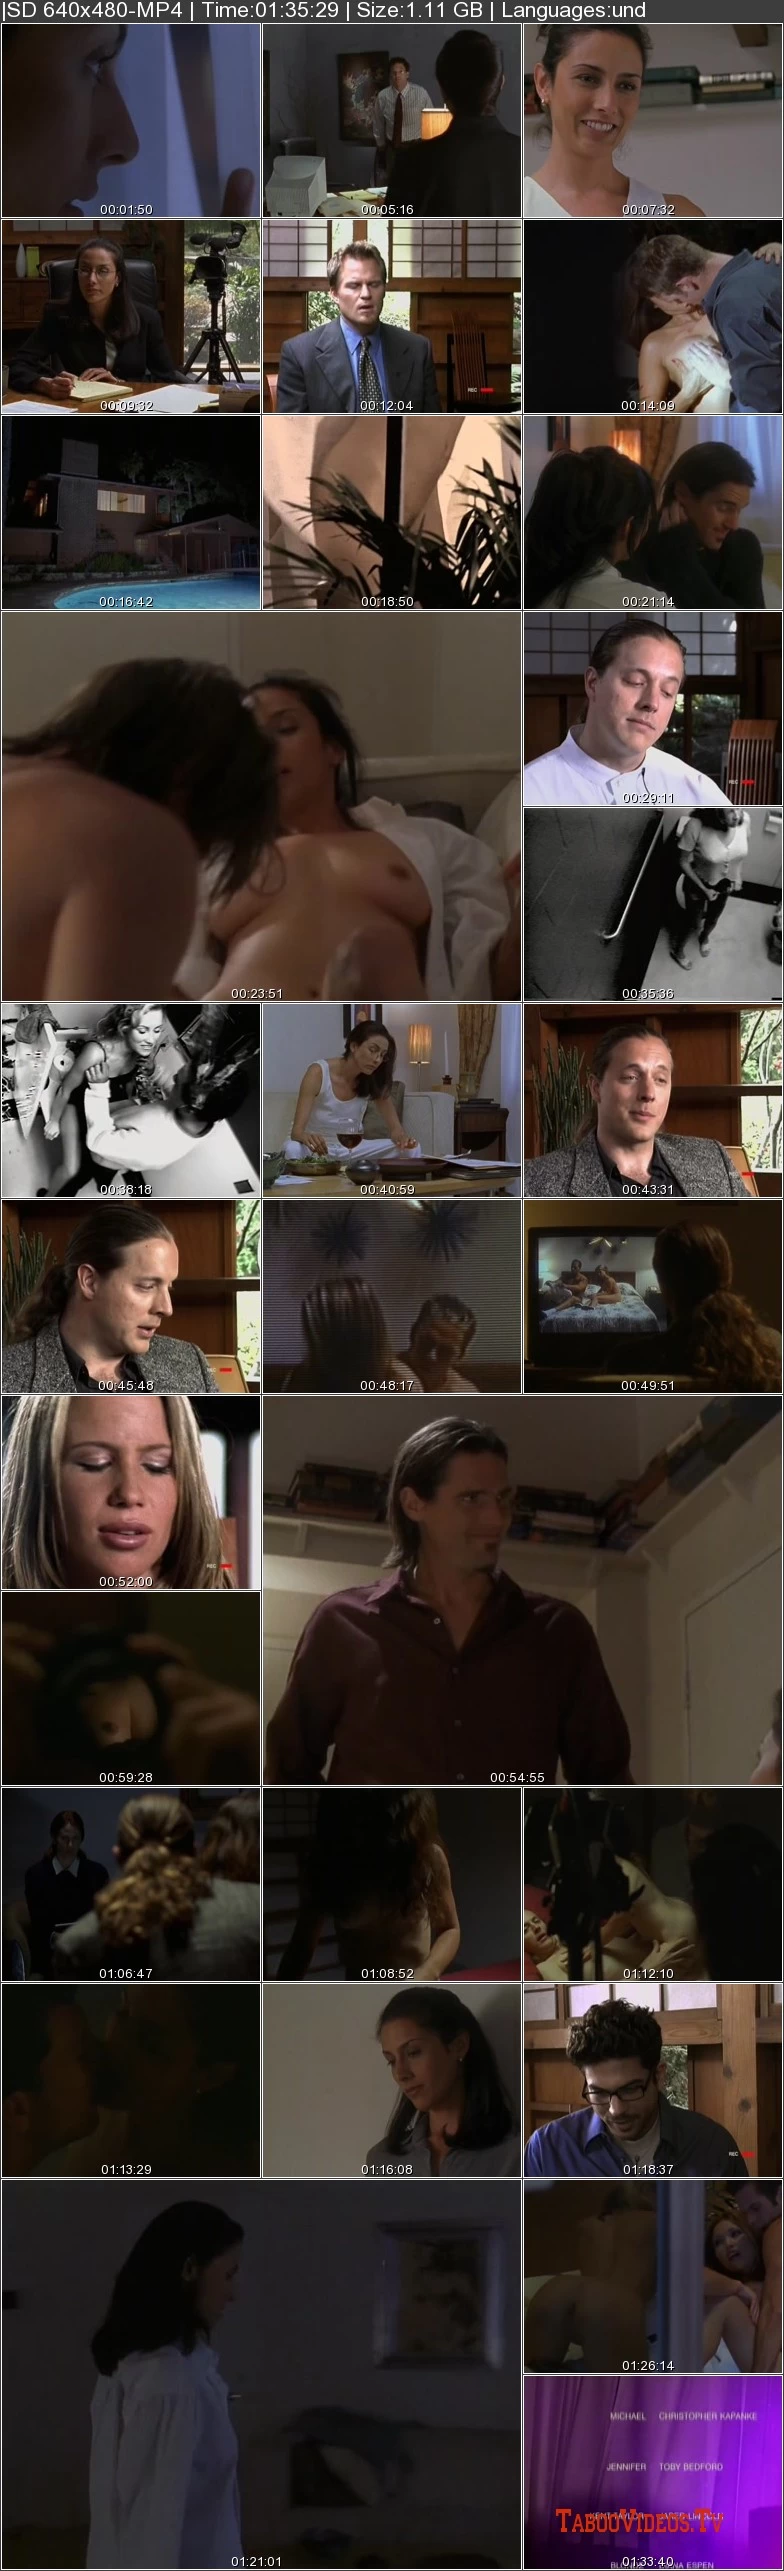 Voyeur Confessions (2001) / Erotic sexploitation softcore movie